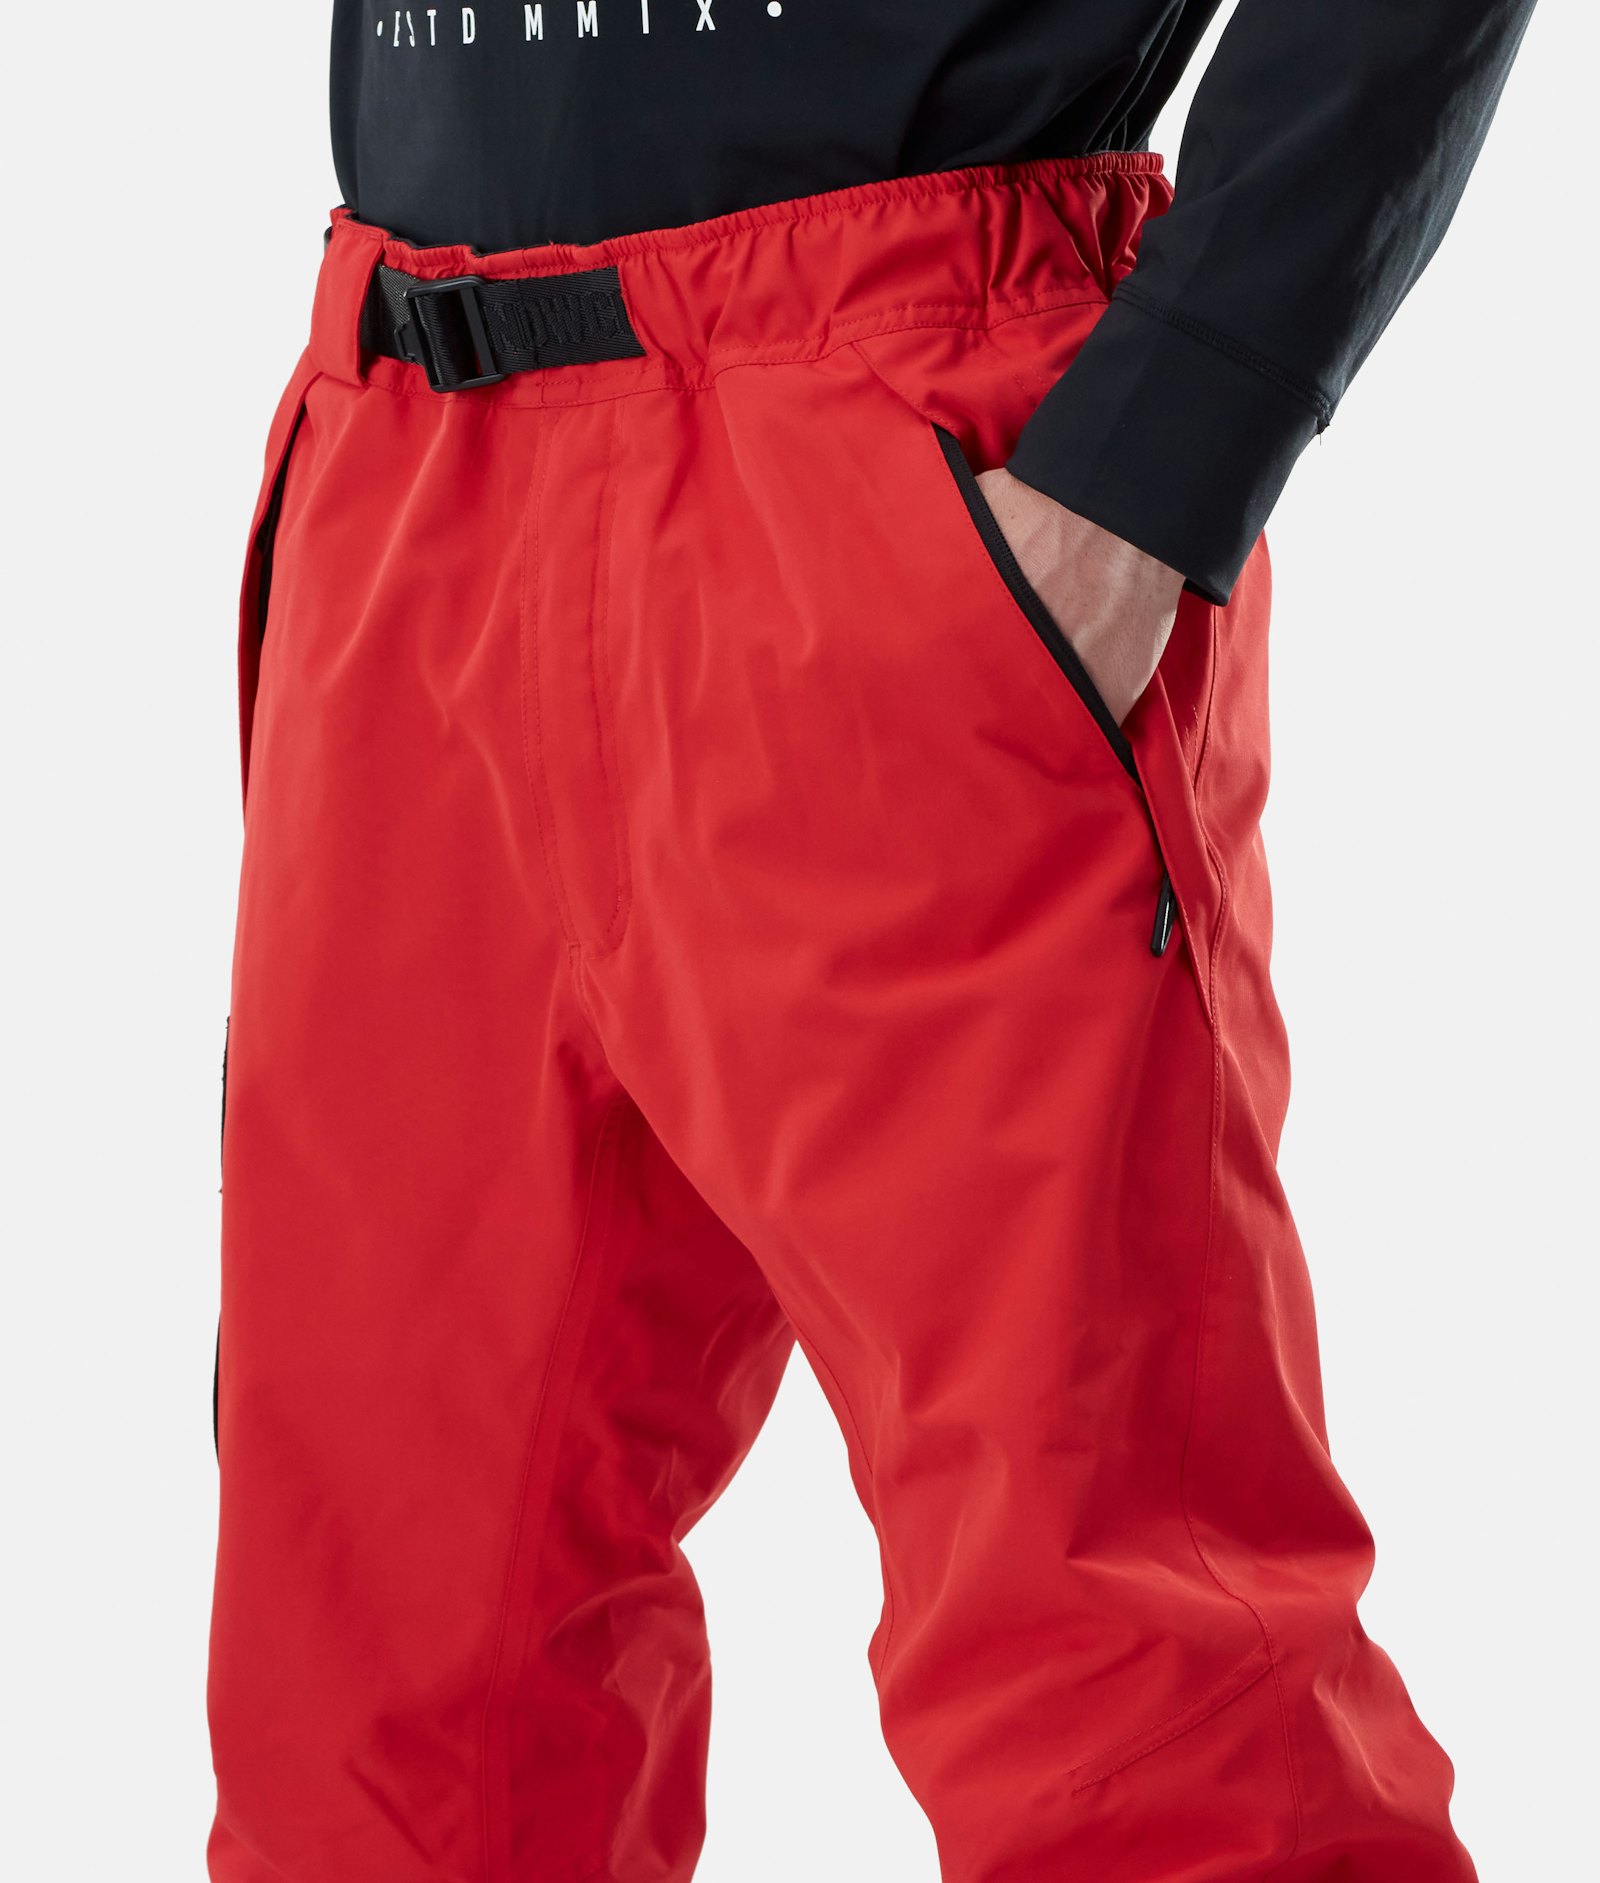 Dope JT Blizzard 2020 Pantalones Esquí Hombre Red